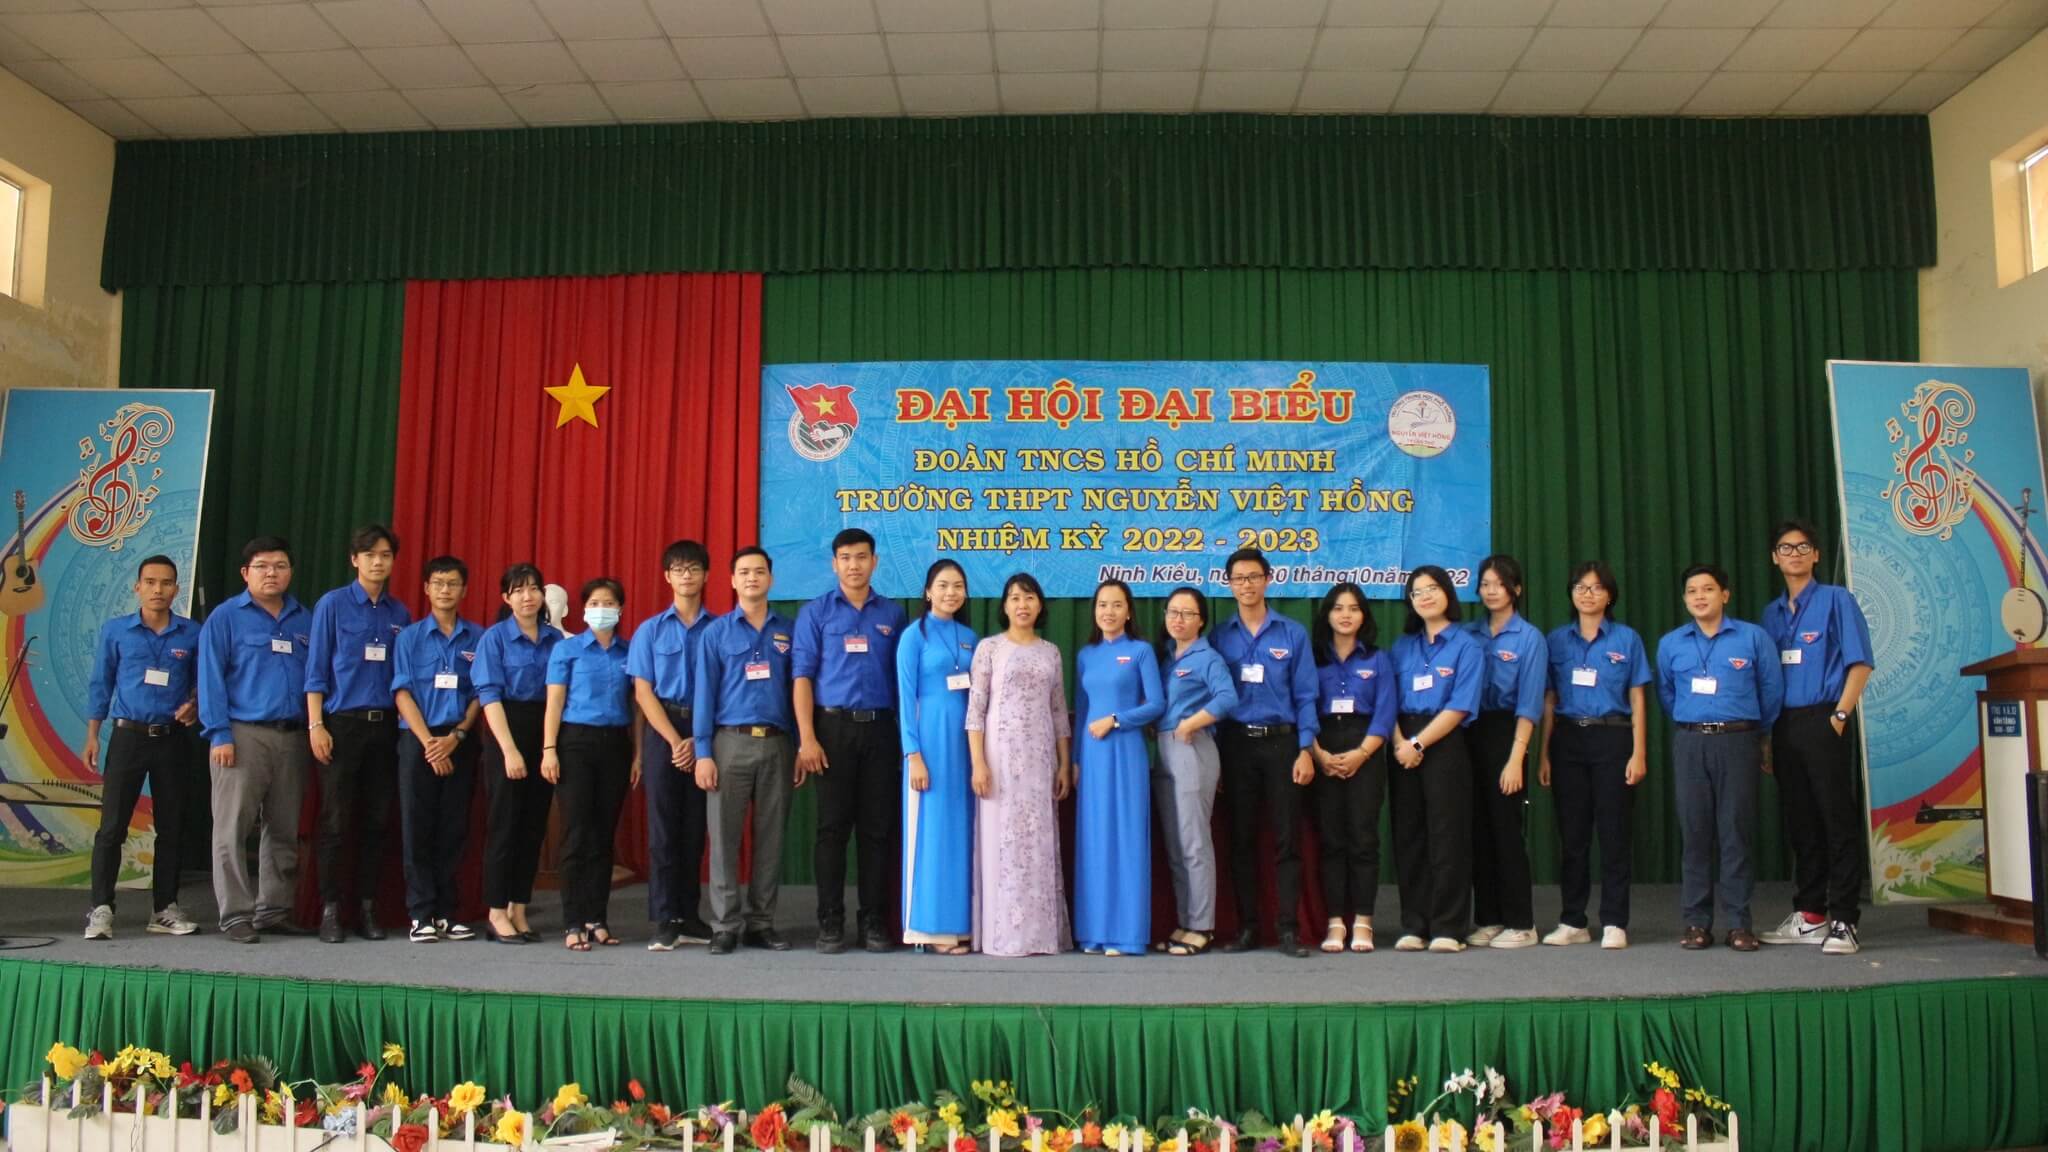 Đại hội trường THPT Nguyễn Việt Hồng 